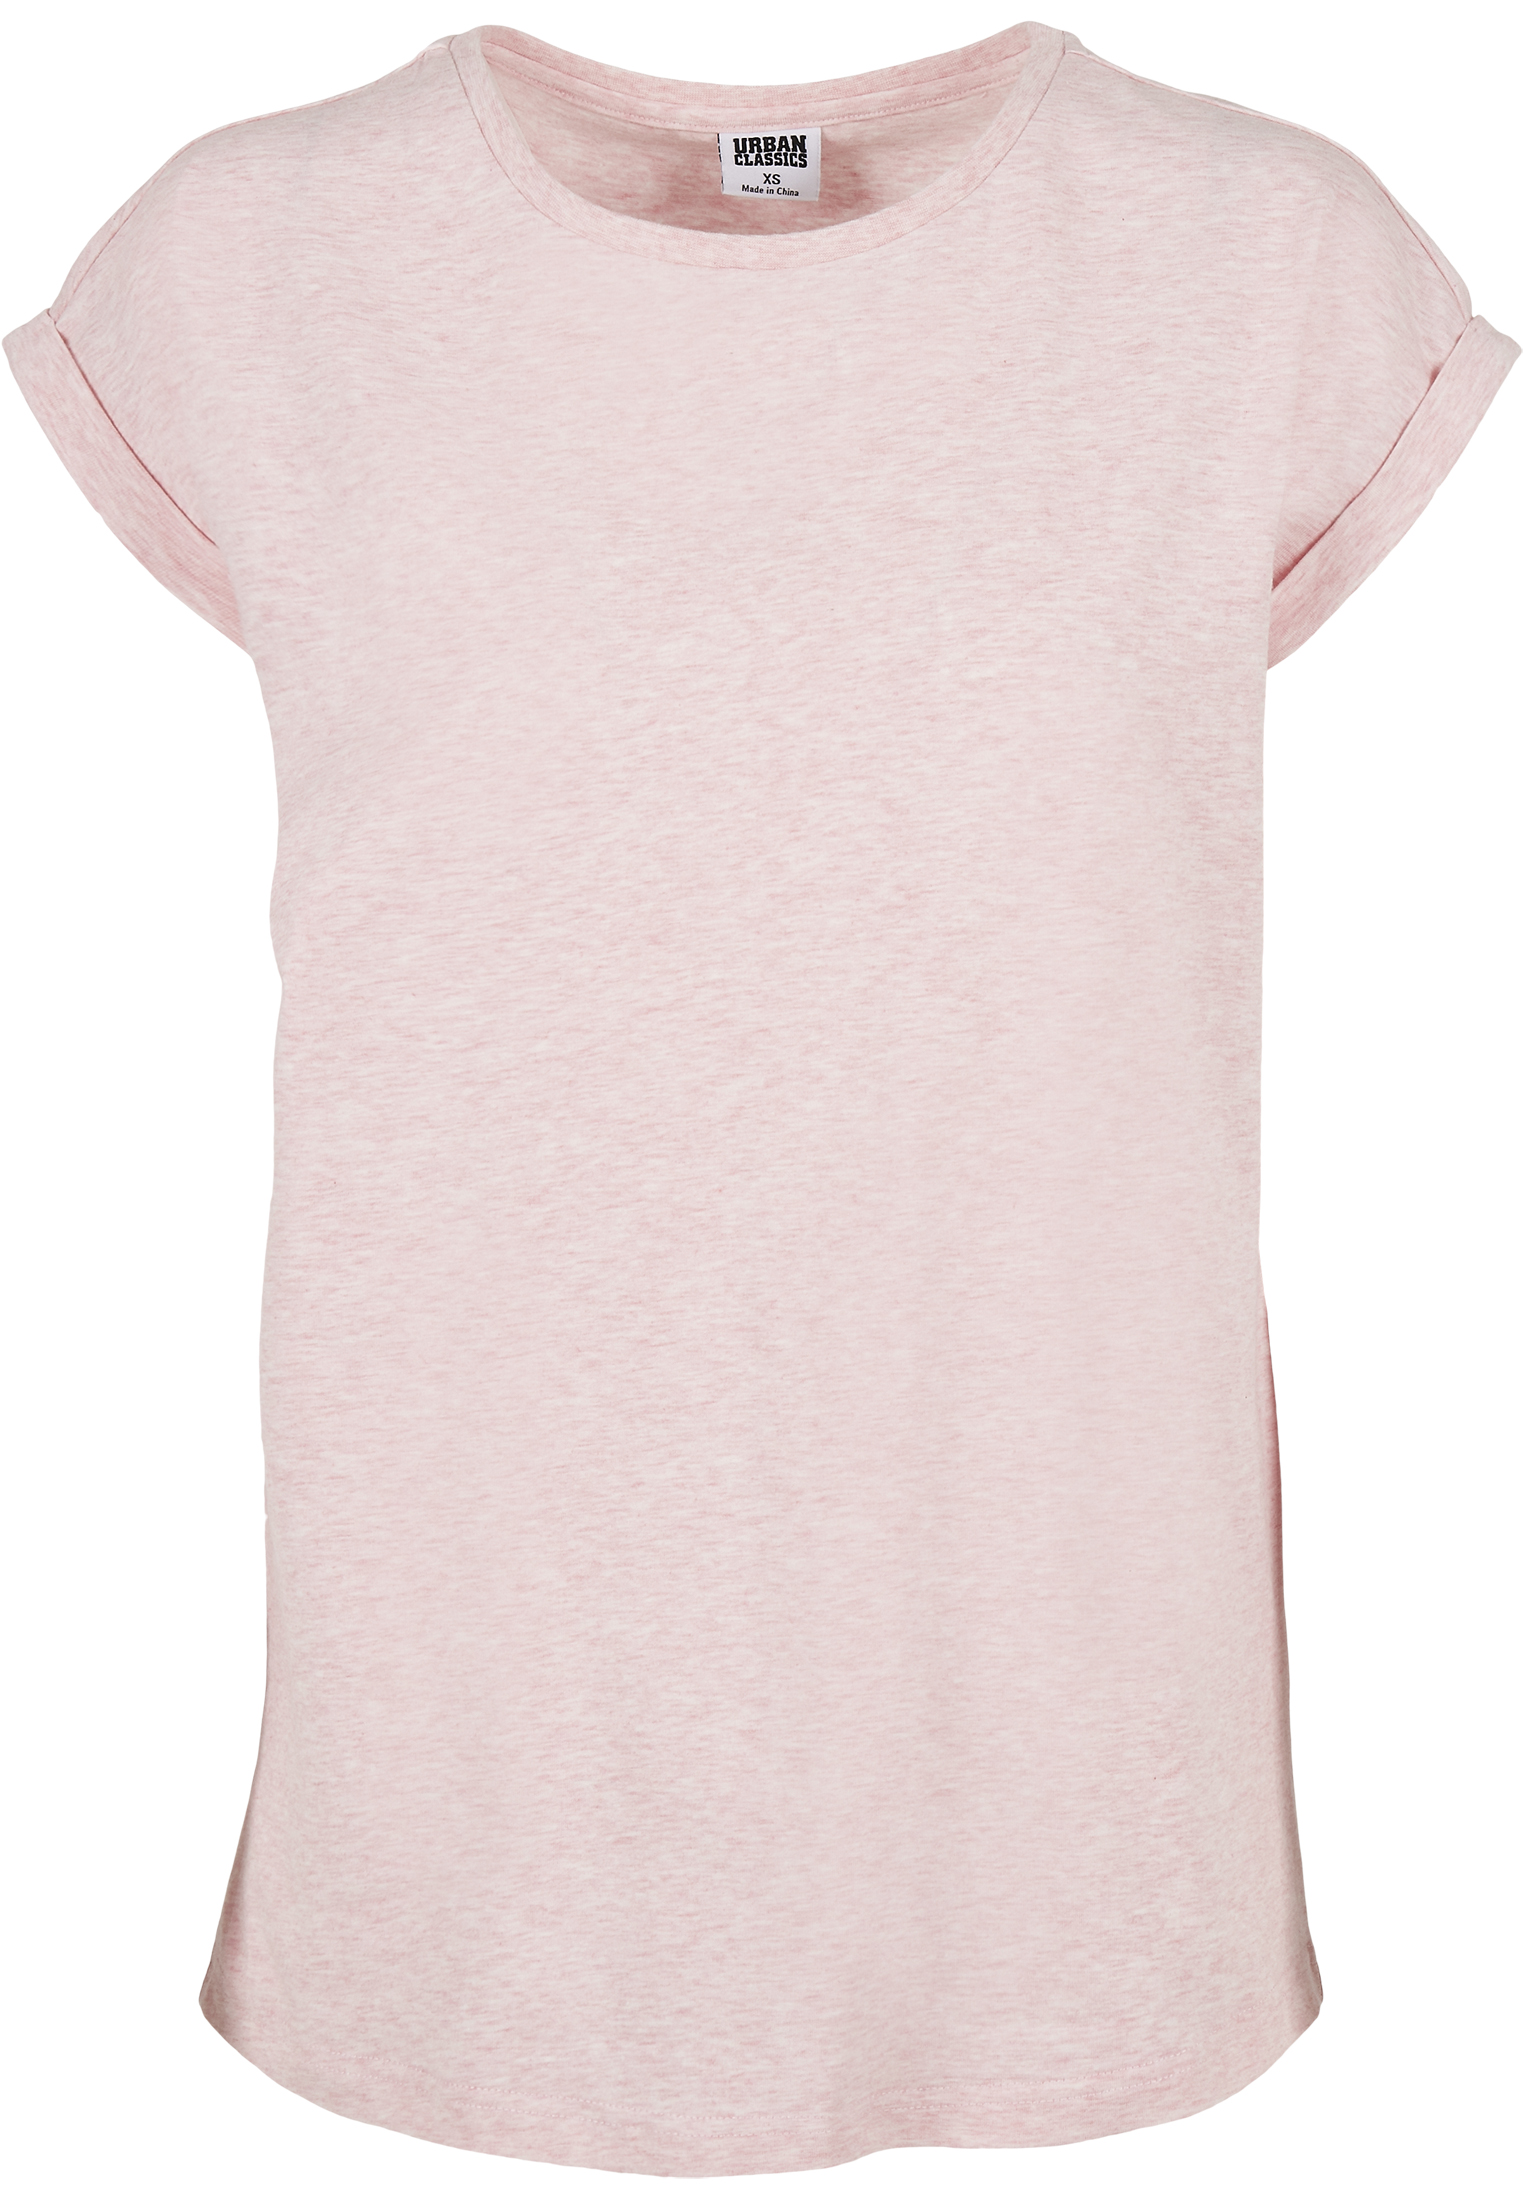 T-Shirts Ladies Color Melange Extended Shoulder Tee in Farbe pink melange